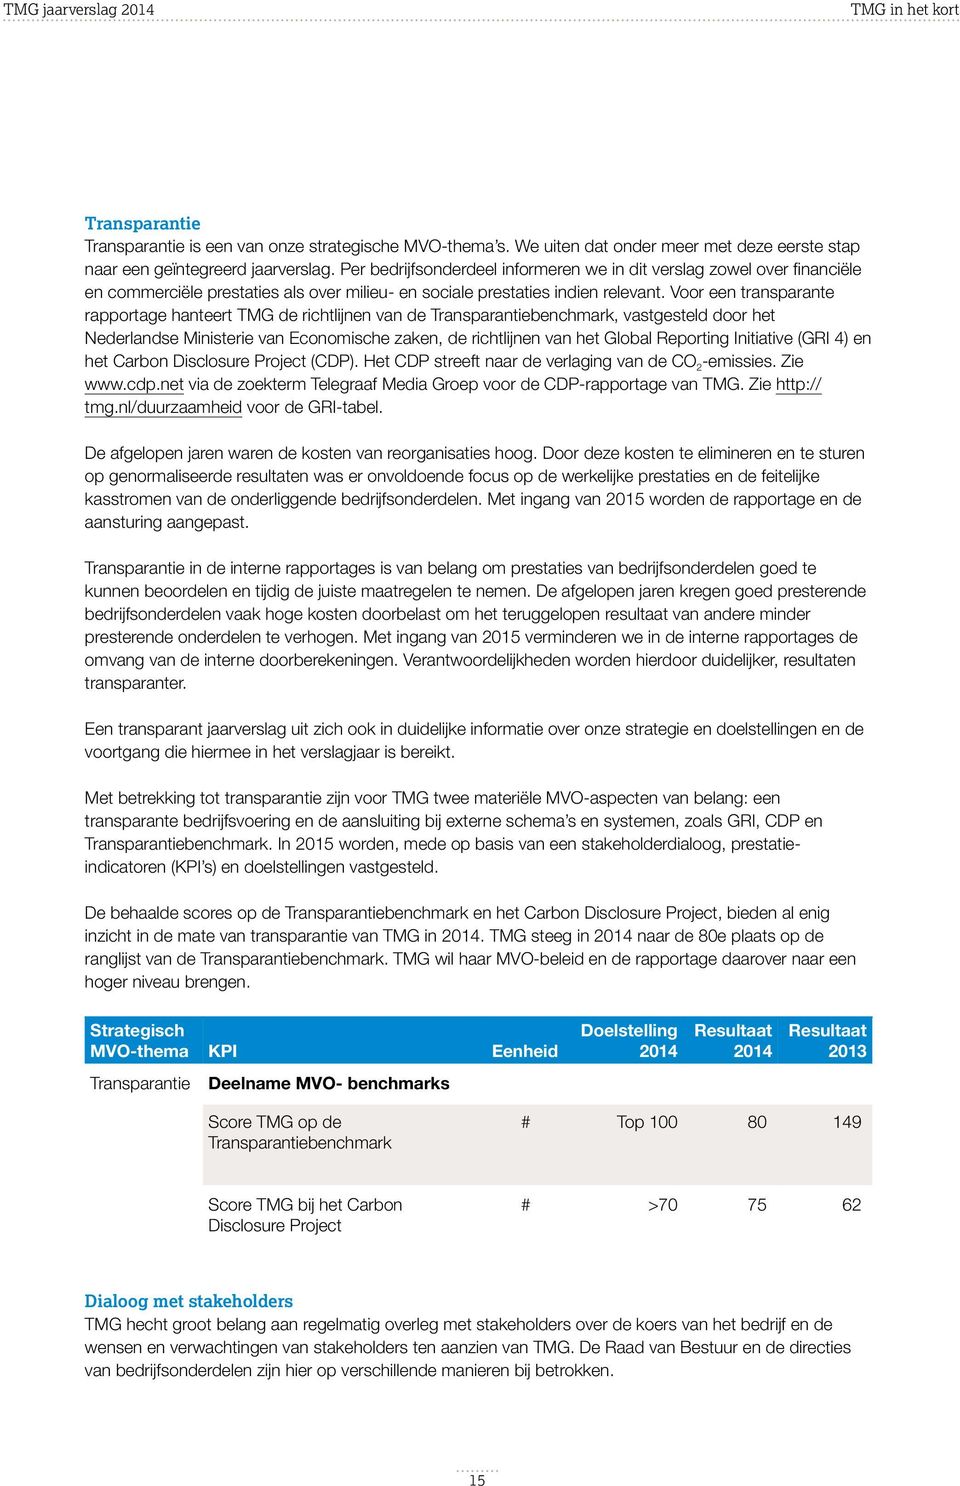 Voor een transparante rapportage hanteert TMG de richtlijnen van de Transparantiebenchmark, vastgesteld door het Nederlandse Ministerie van Economische zaken, de richtlijnen van het Global Reporting